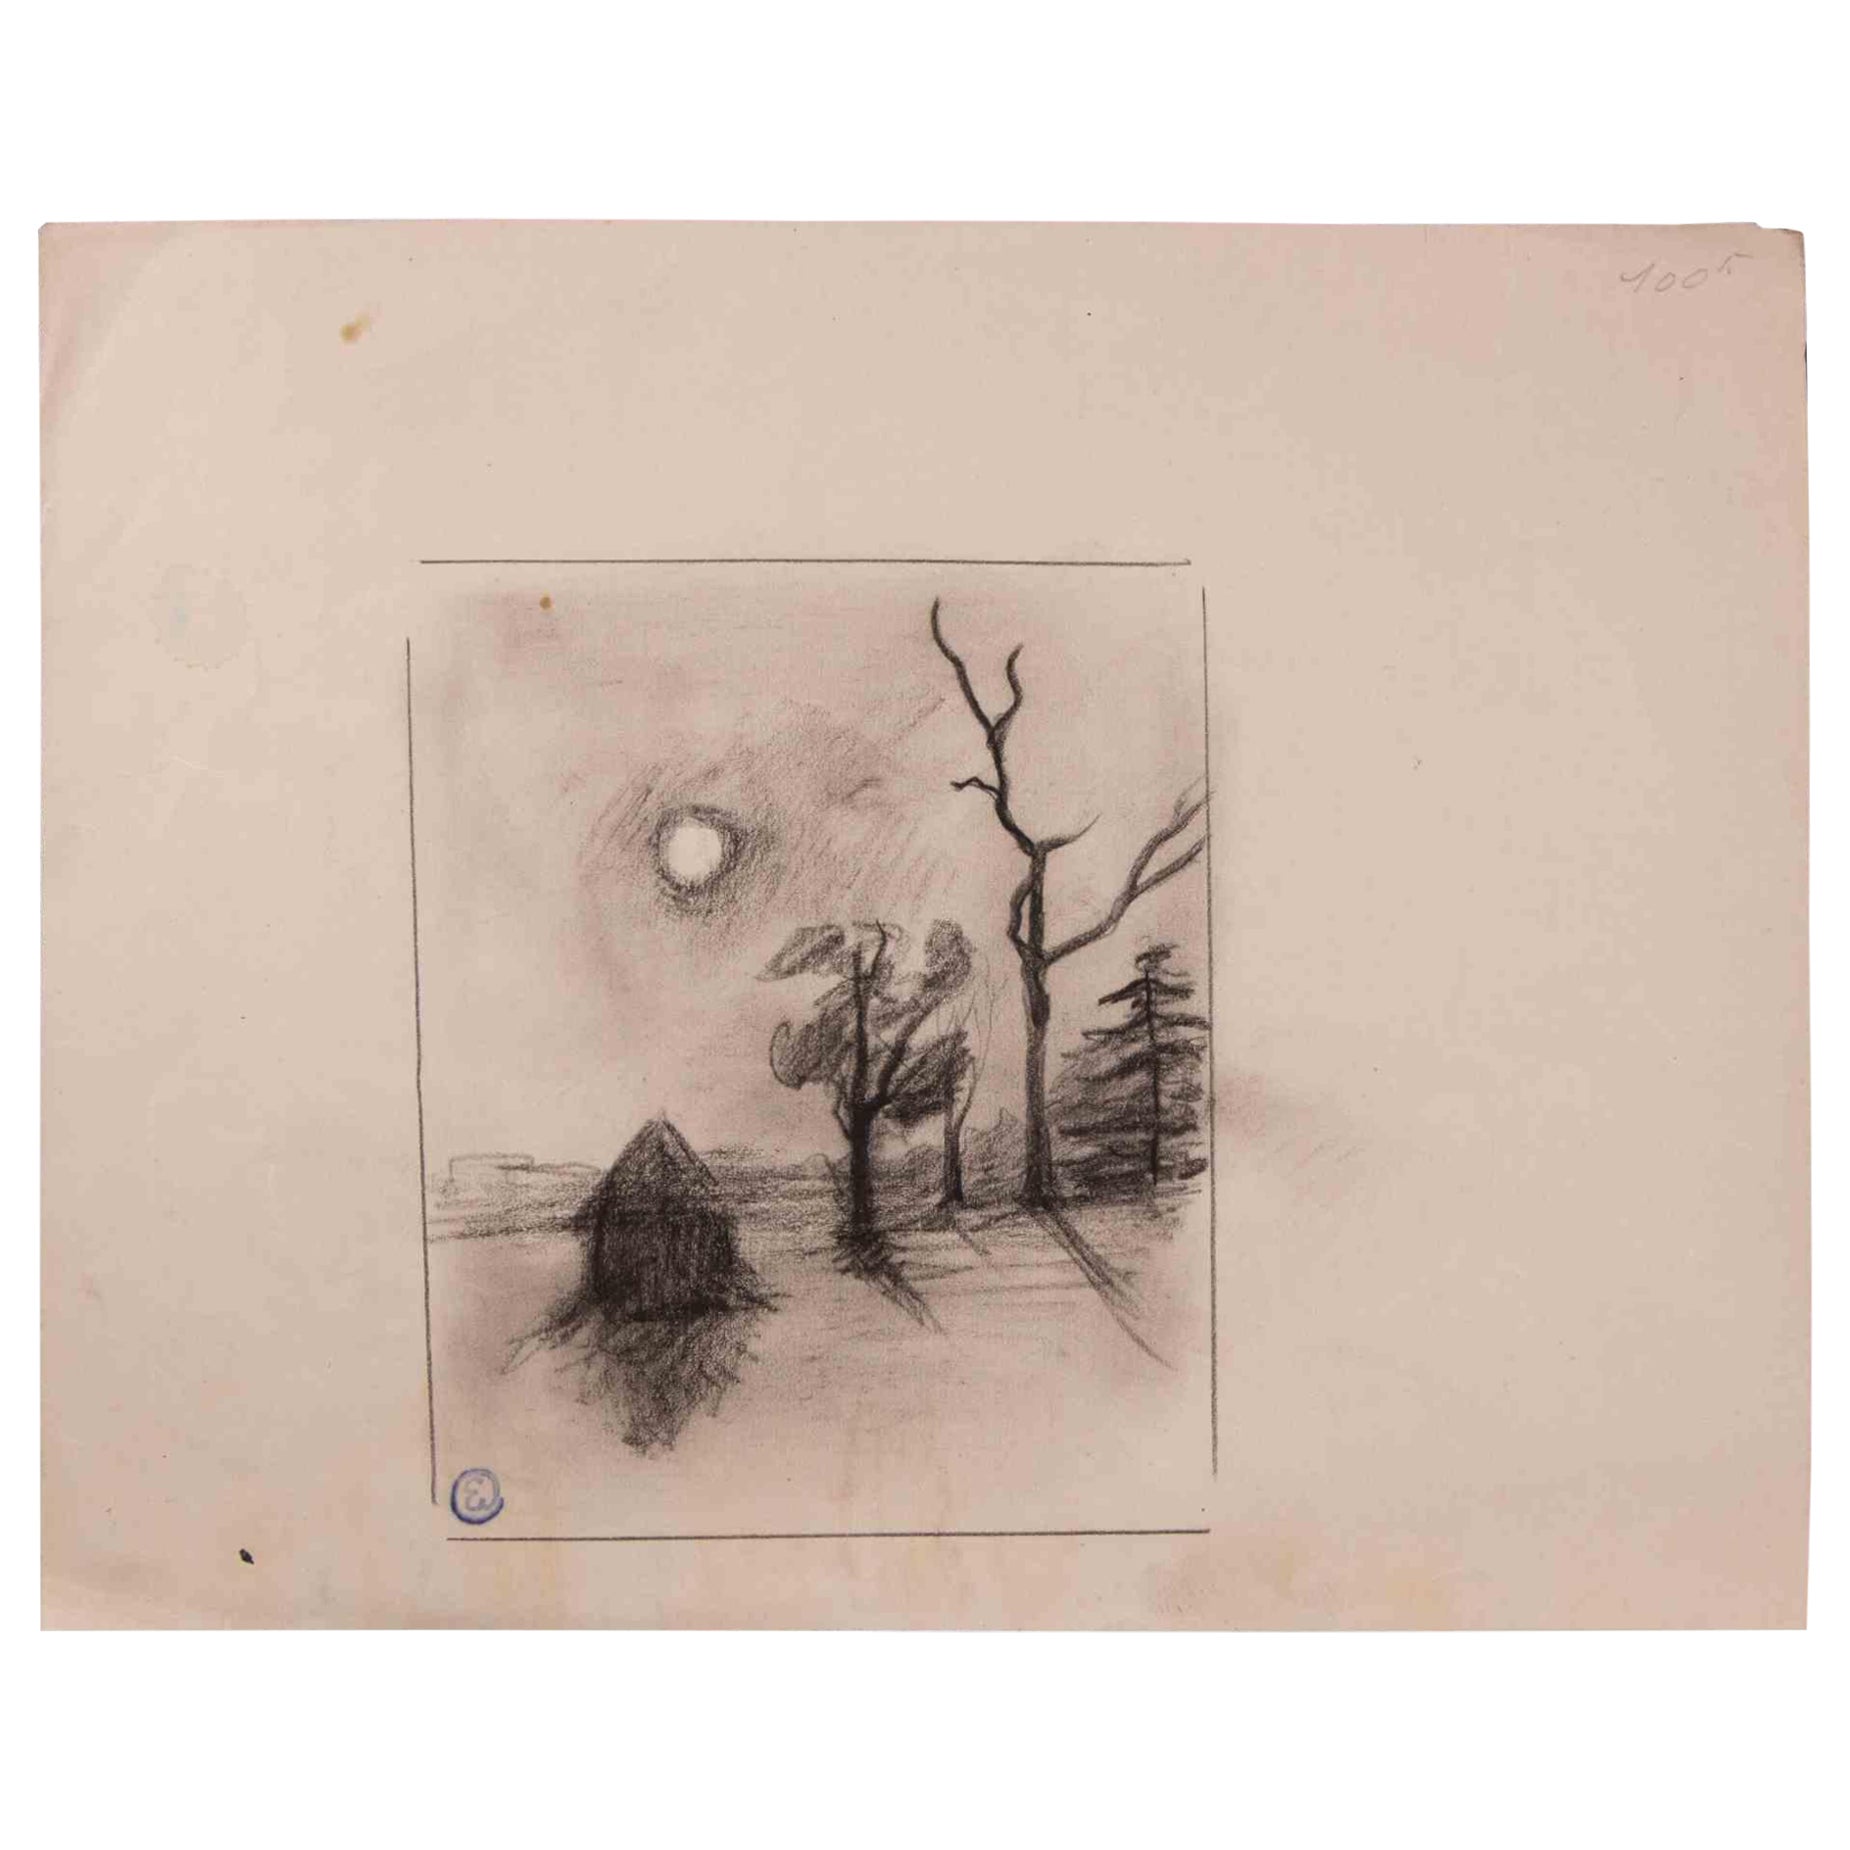 Paysage est un dessin original au fusain réalisé au début du 20ème siècle par Edmond Cuisinier (1857-1917).

Monogramme sur la partie inférieure.

Bonnes conditions.

L'œuvre d'art est décrite par des traits habiles et poétiques.

 